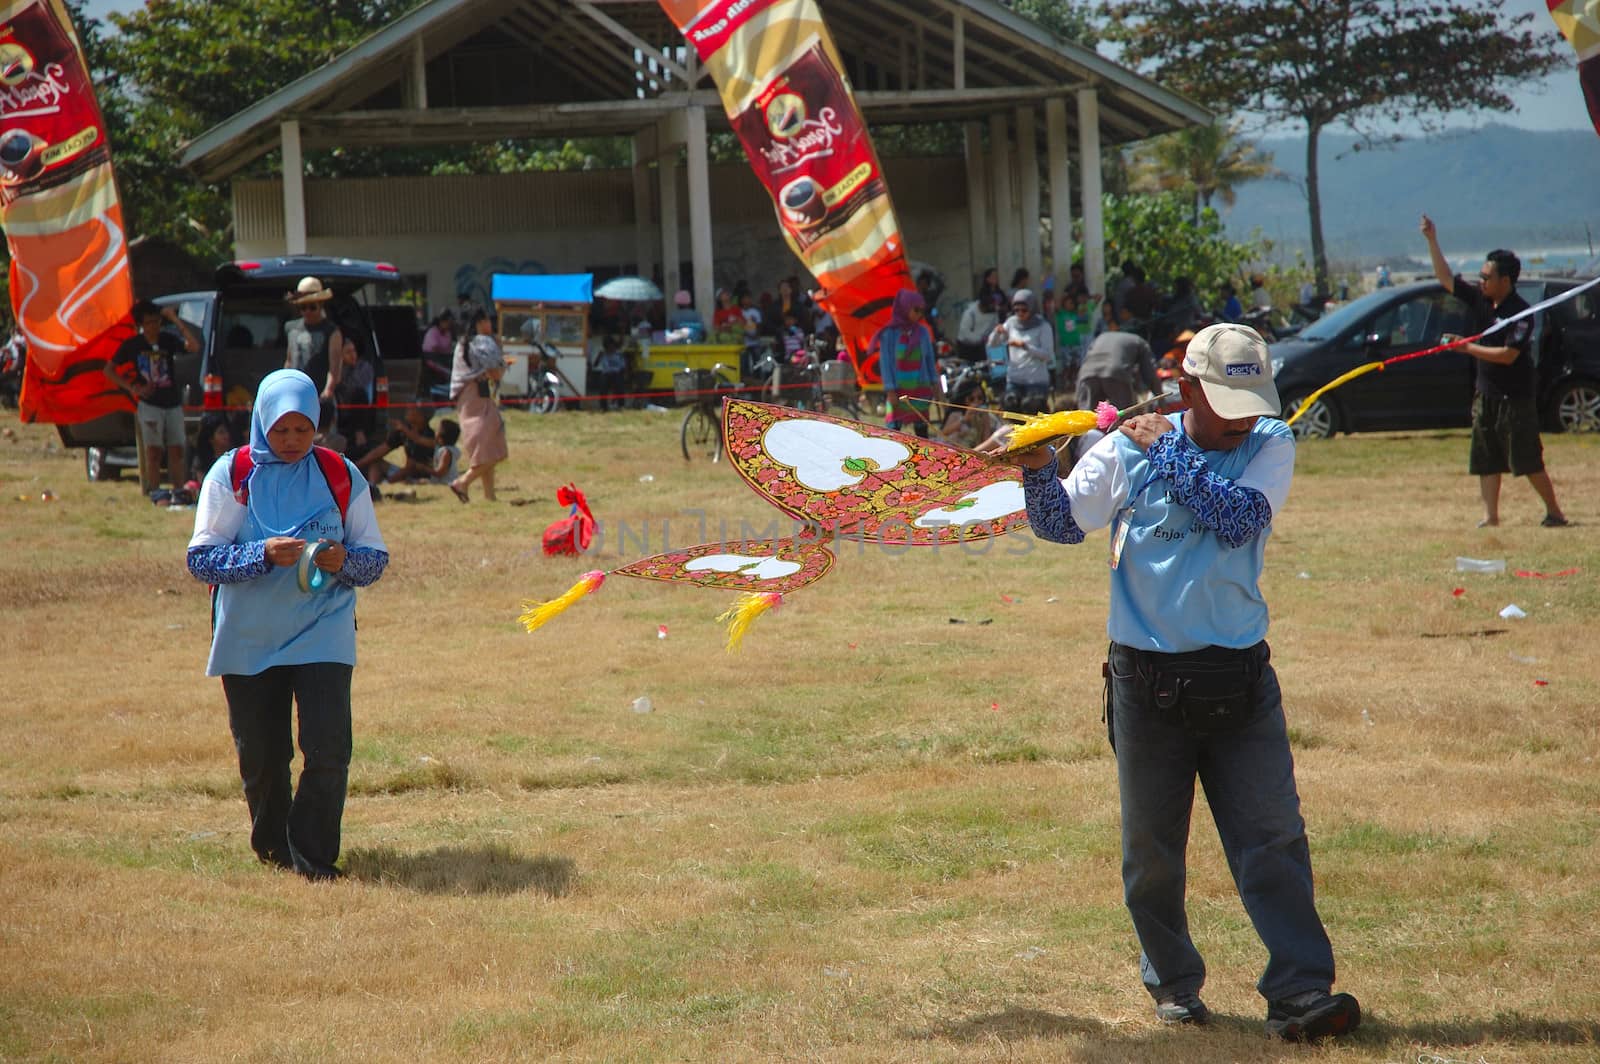 pangandaran, indonesia-july 16, 2011: various model of participant kite at pangandaran international kite festival that held in east coast pangandaran beach, west java-indonesia.